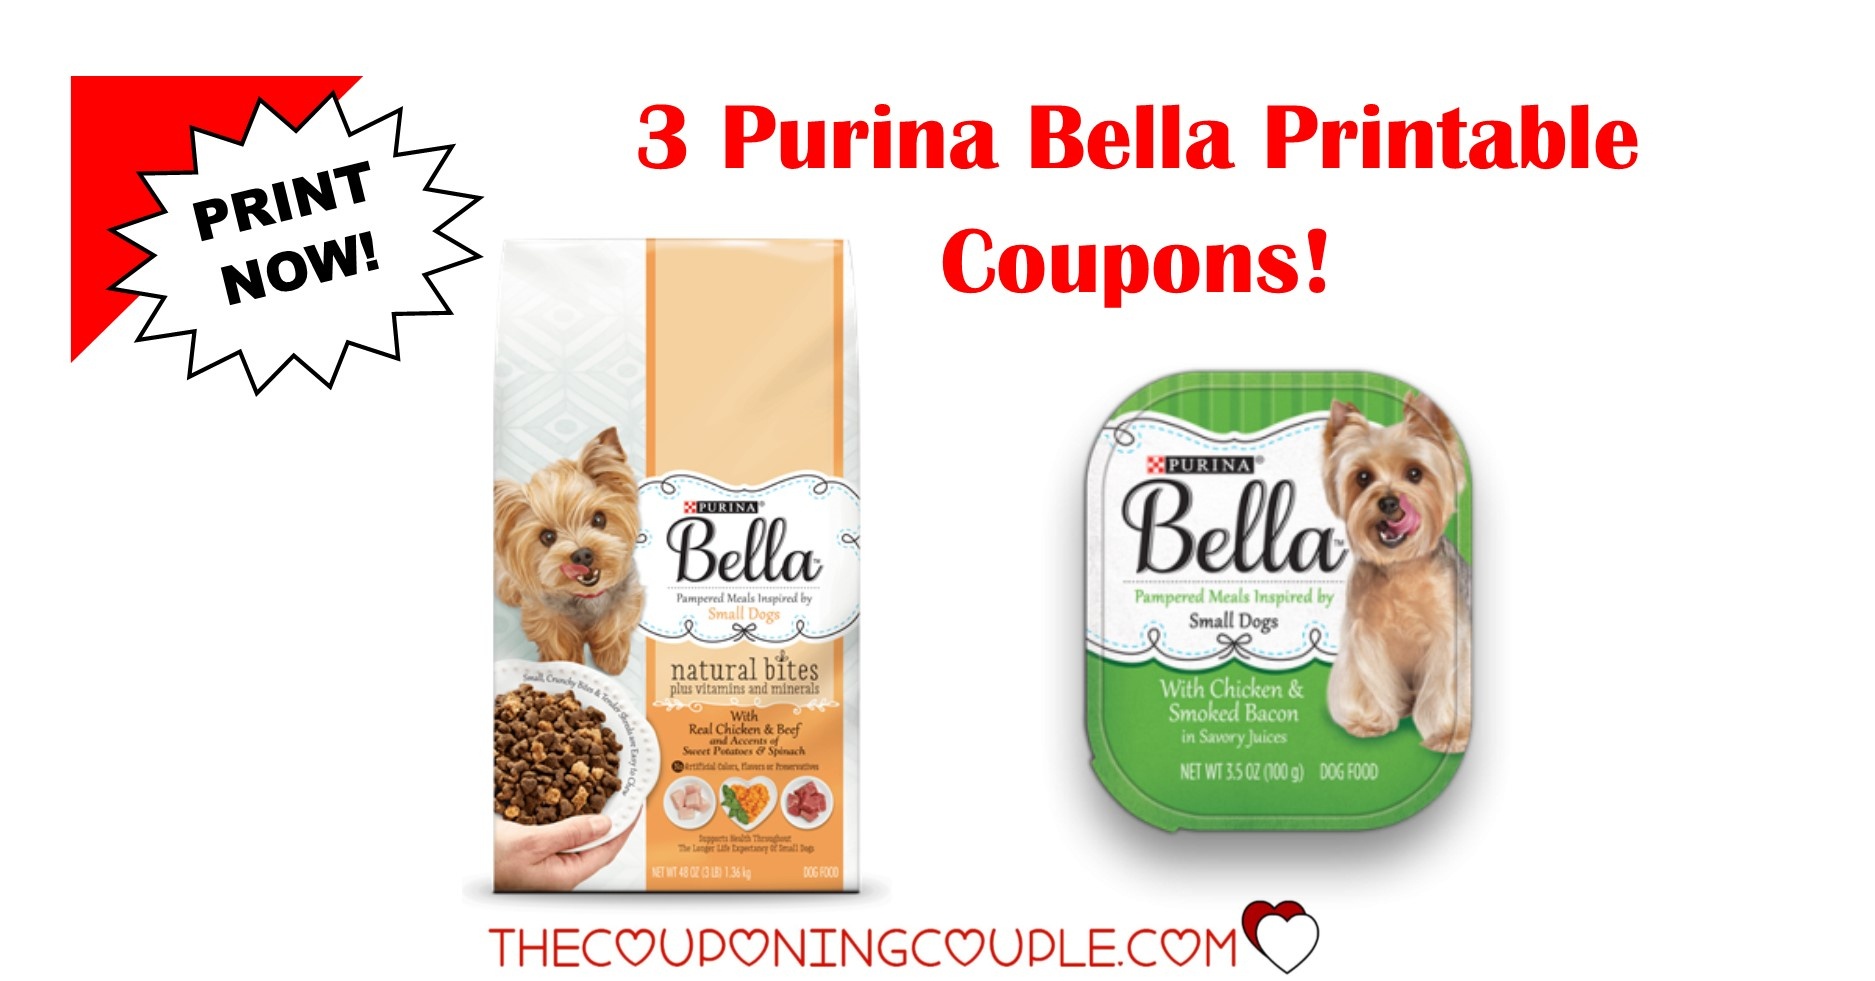 3 New Purina Bella Dog Food Printable Coupons ~ Print Now! - Free Printable Coupons For Food